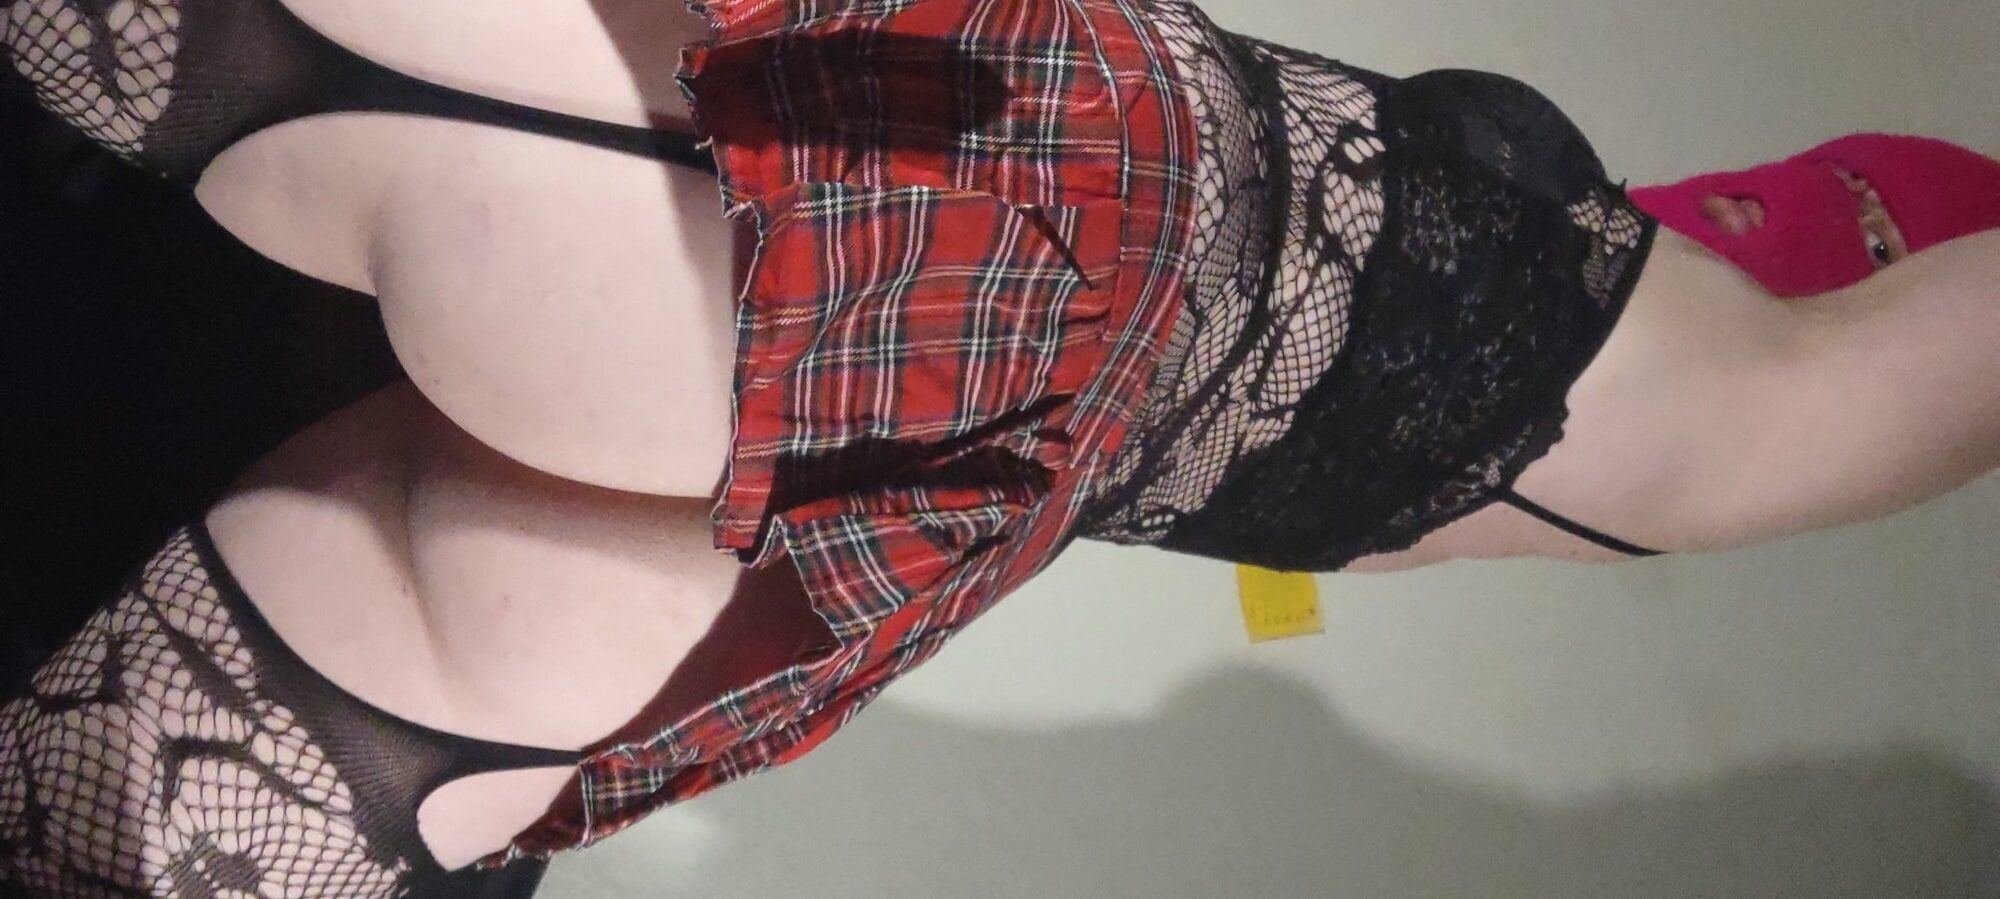 New skirt booty pics #14